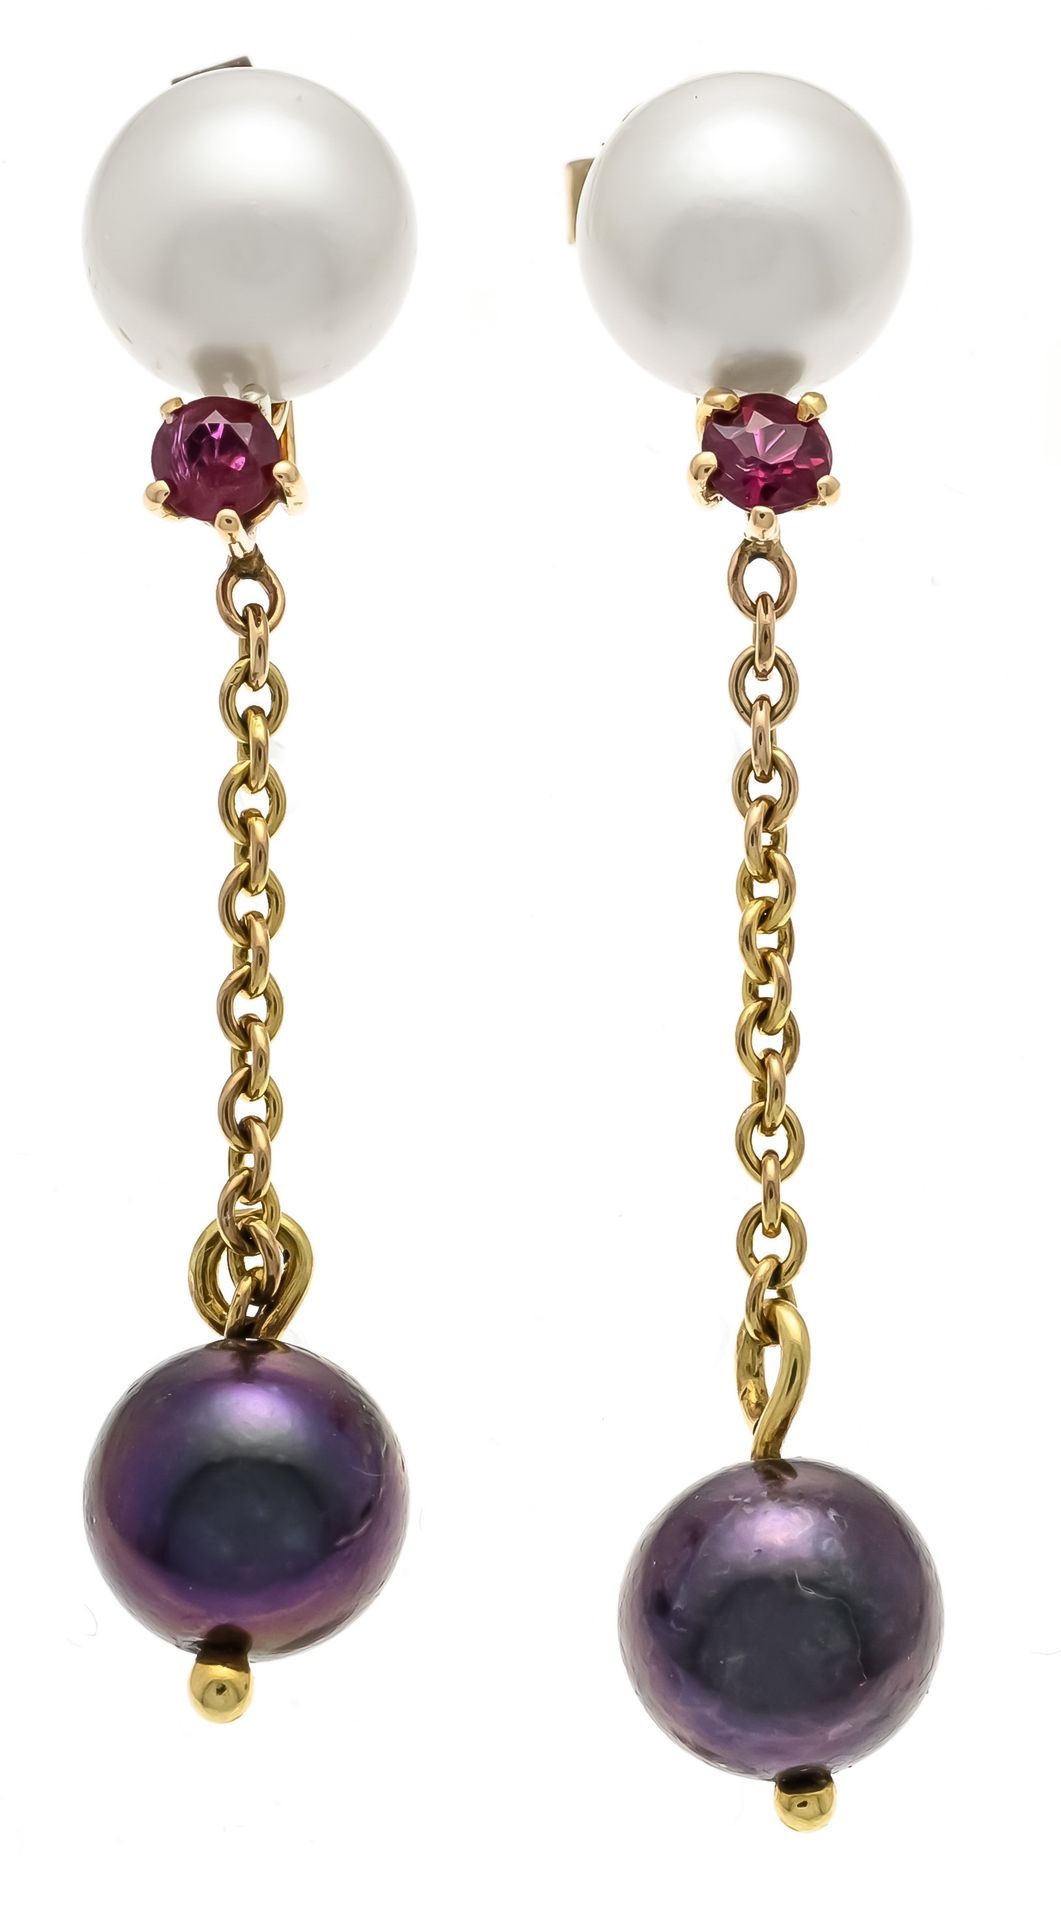 Null Pendientes perla rubí GG 585/000 con 2 perlas Akoya blancas y 2 perlas Peac&hellip;